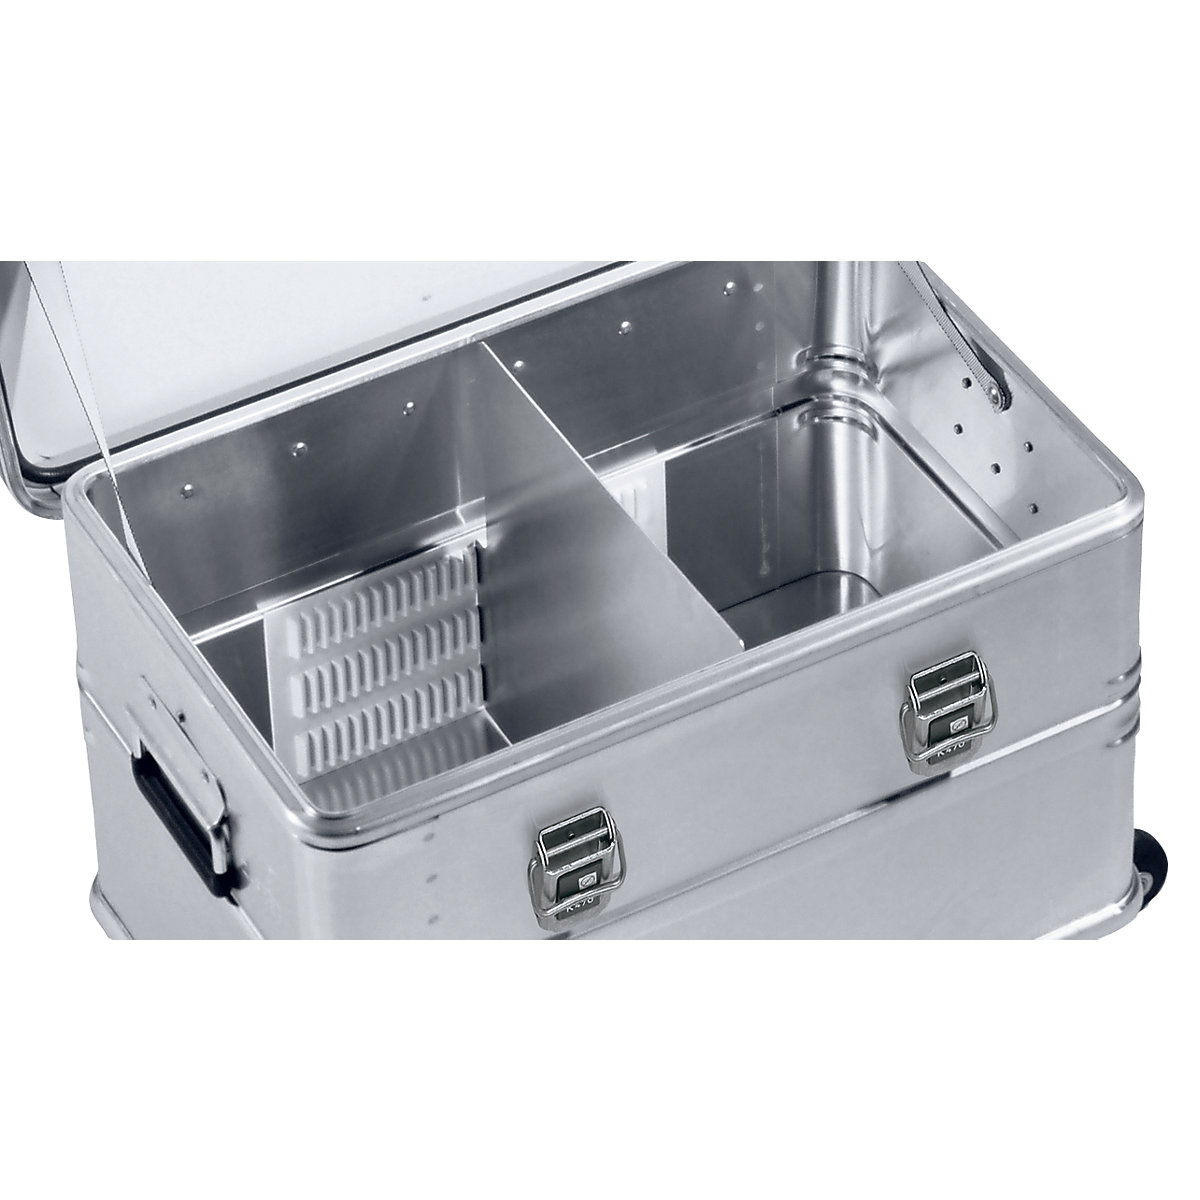 Sistema de separadores para cajas Combi de aluminio – ZARGES